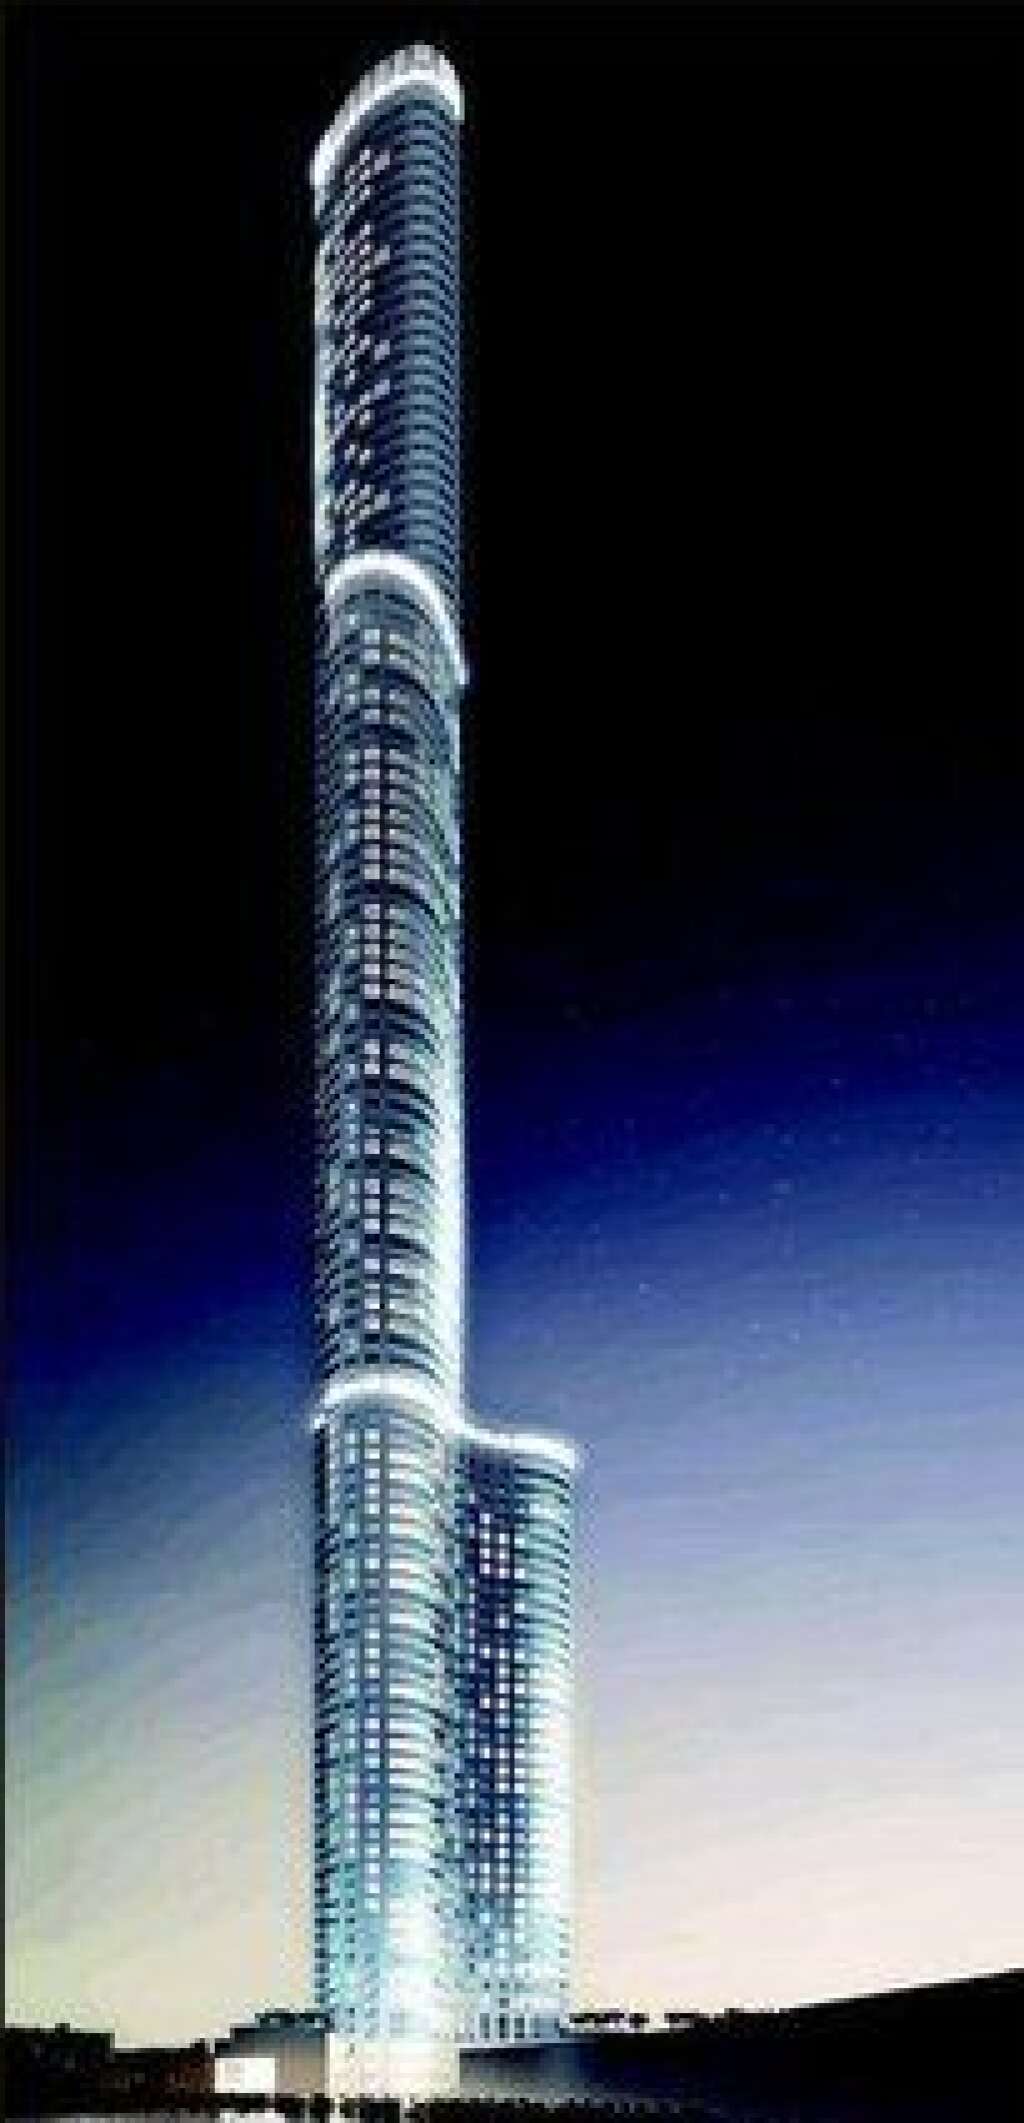 Le World One à Bombay (Inde) - Une fois achevée en cours d'année, cette tour construite à Bombay depuis quatre ans va battre un record: celui du plus haut gratte-ciel résidentiel du monde, avec une hauteur de 442 mètres. La gamme de prix des appartements proposés s'étendra de 1 à 8 millions de dollars.